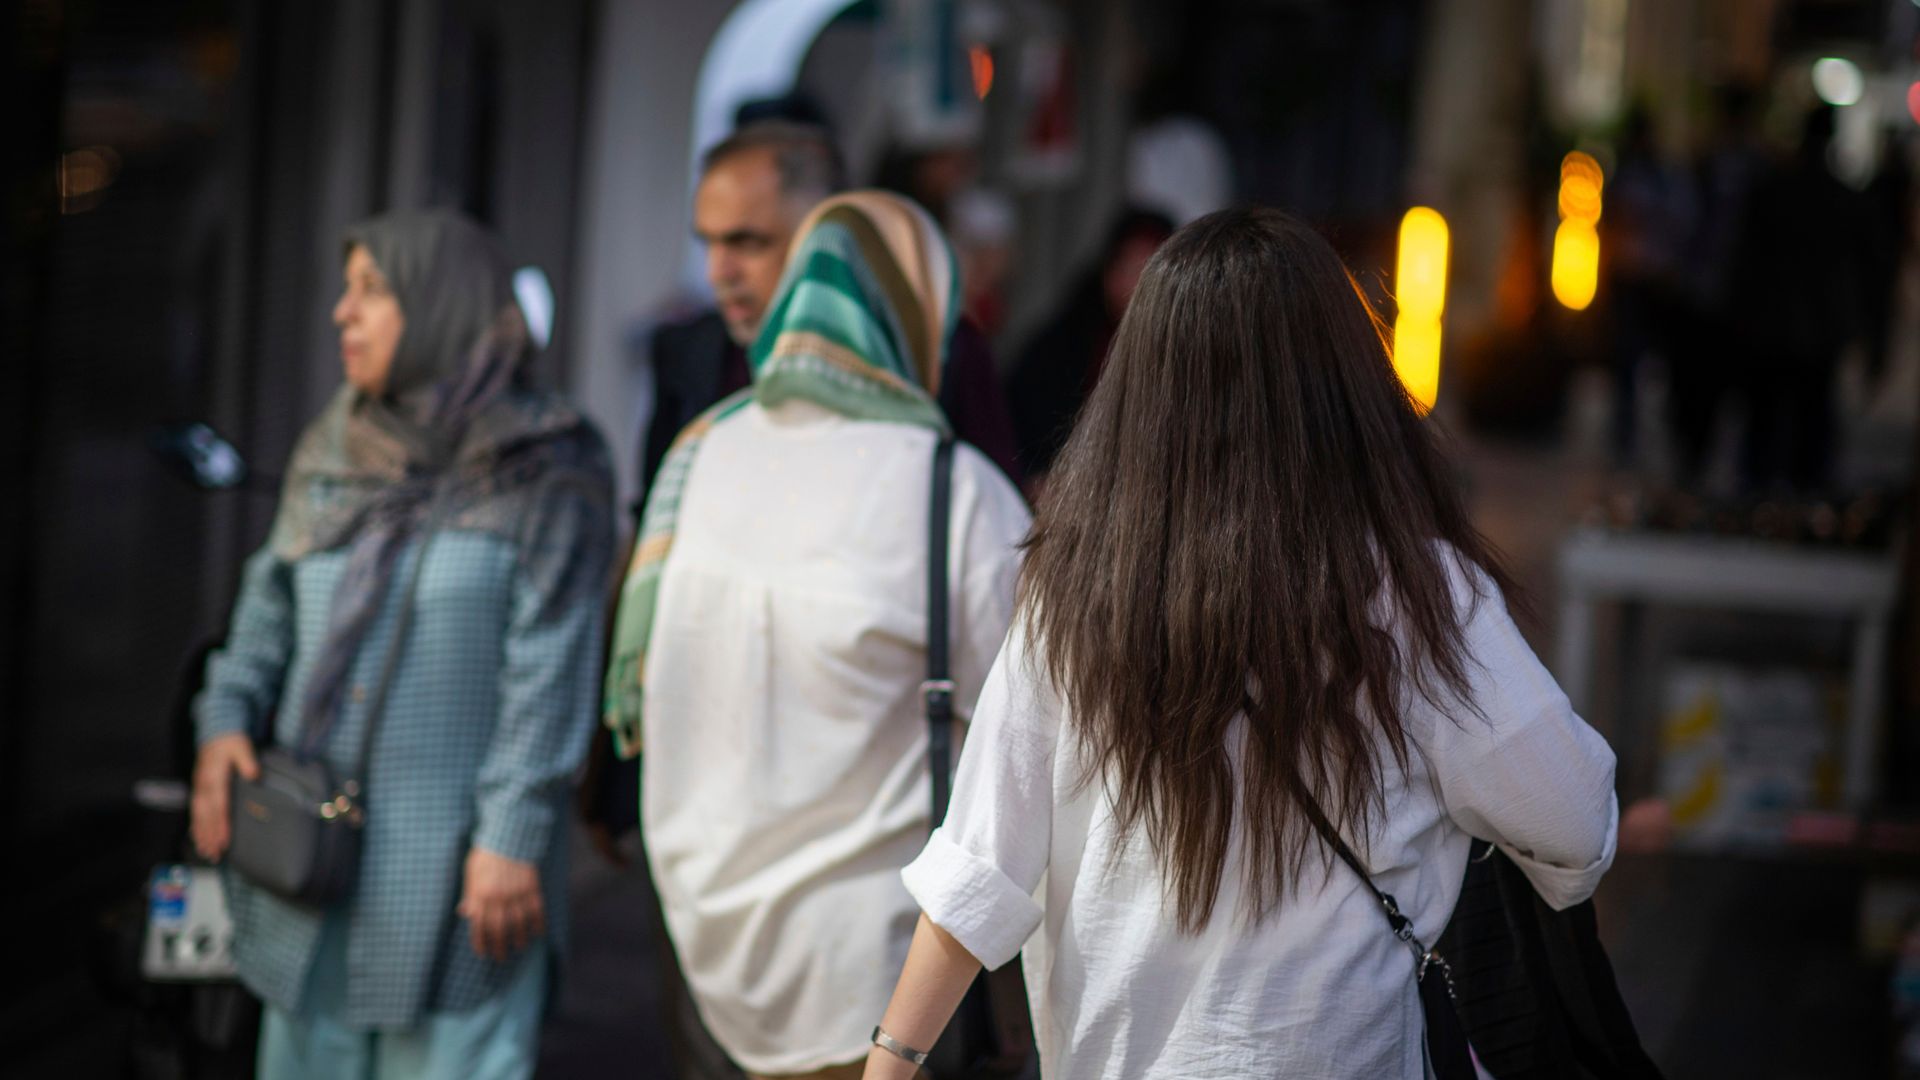 iran verschickt zehntausende sms-warnungen nach kopftuchverstößen